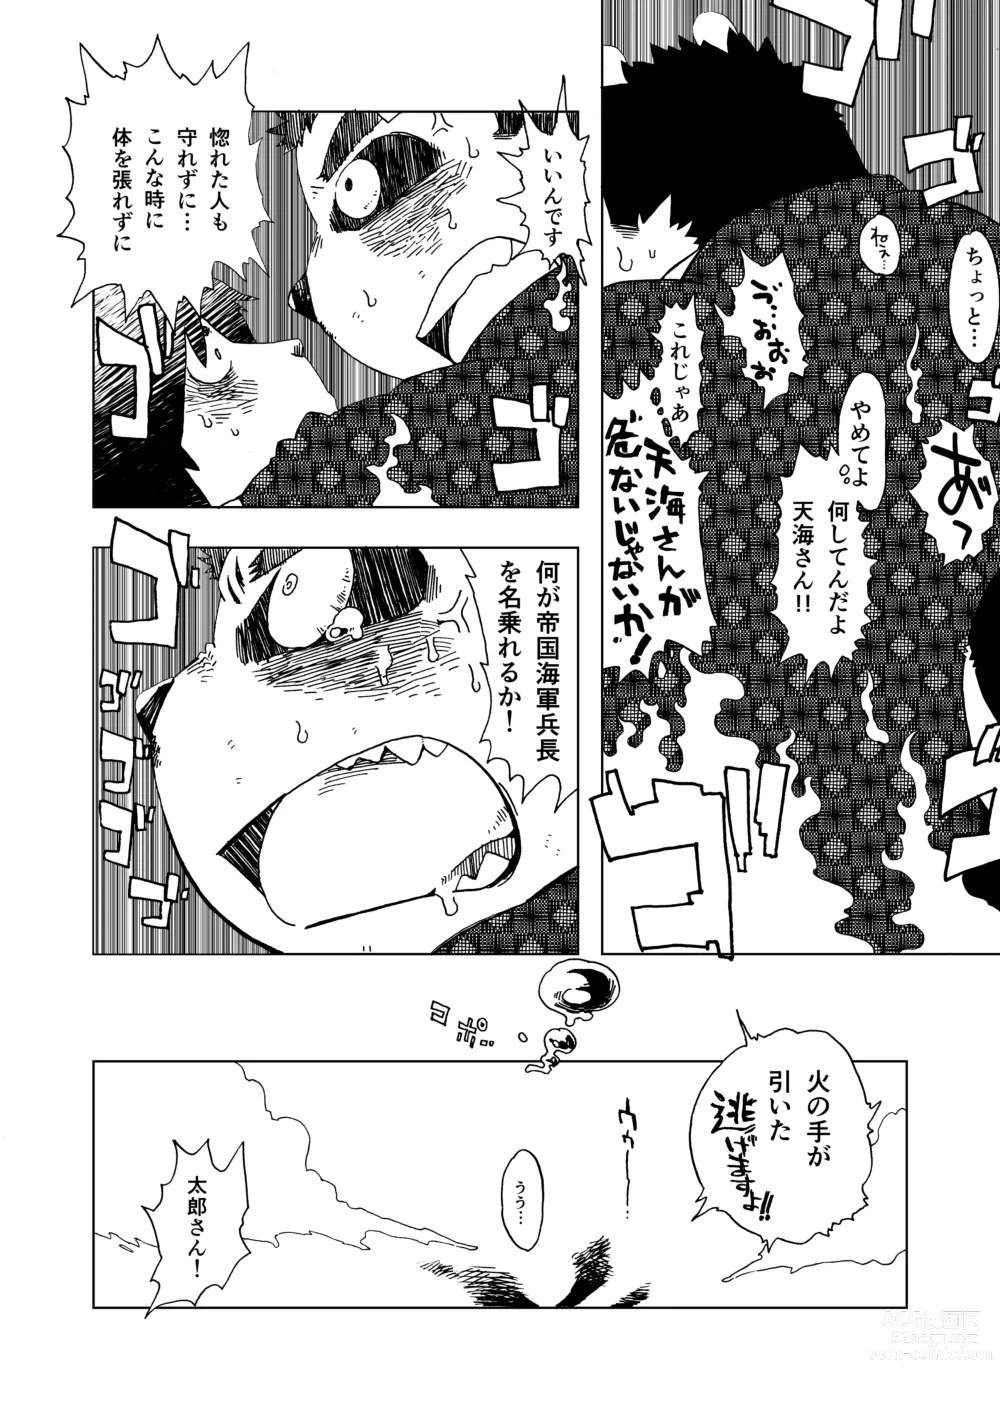 Page 8 of doujinshi - Isetsu Nihon kaiko hanashi kachikachiyama -